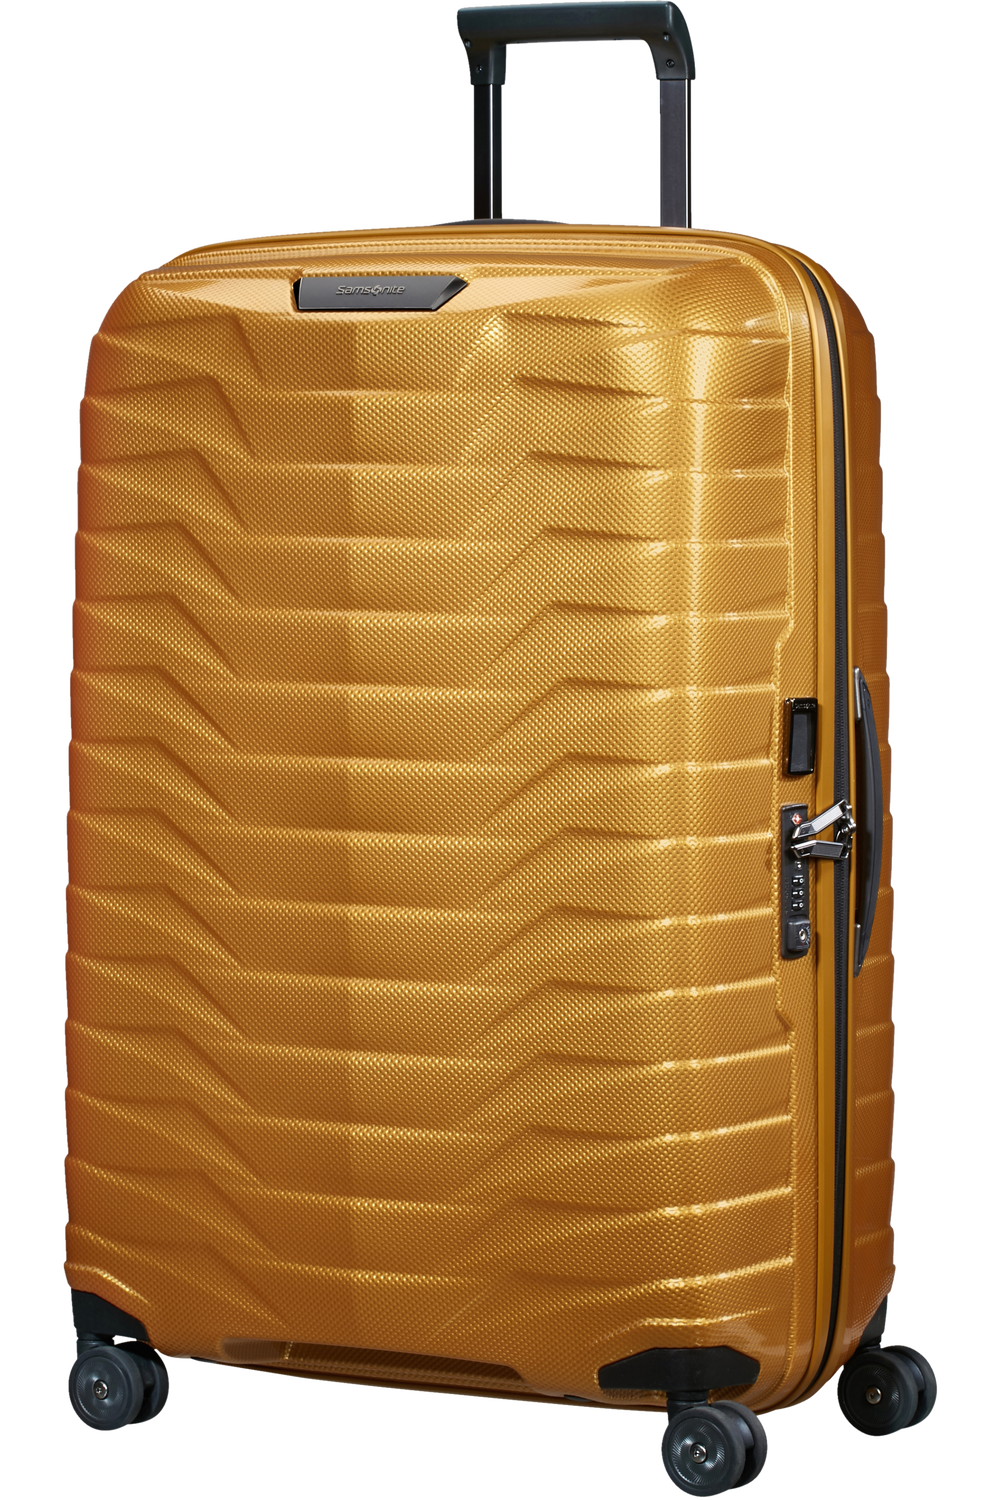 Koffert | Stor | Fordelsprogram | 10 års Garanti | Honey Gold  | TSA Lås |  PROXIS SPINNER 75/28